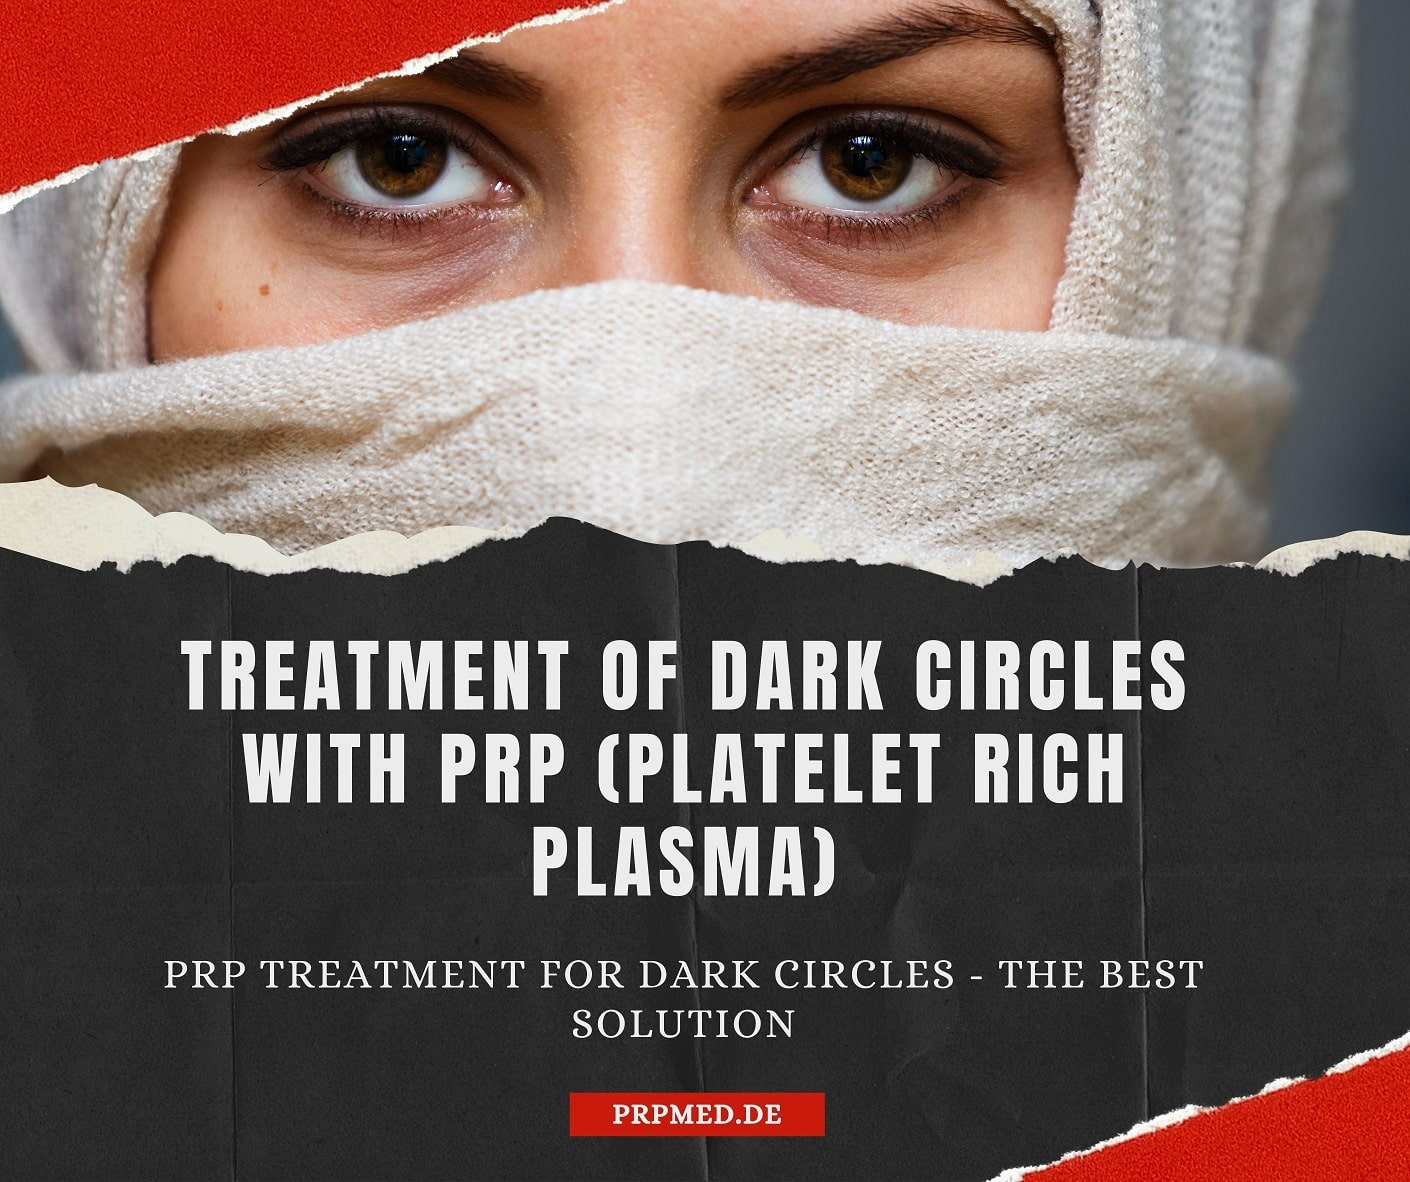 Trattare le occhiaie con Vampire Lift / terapia PRP